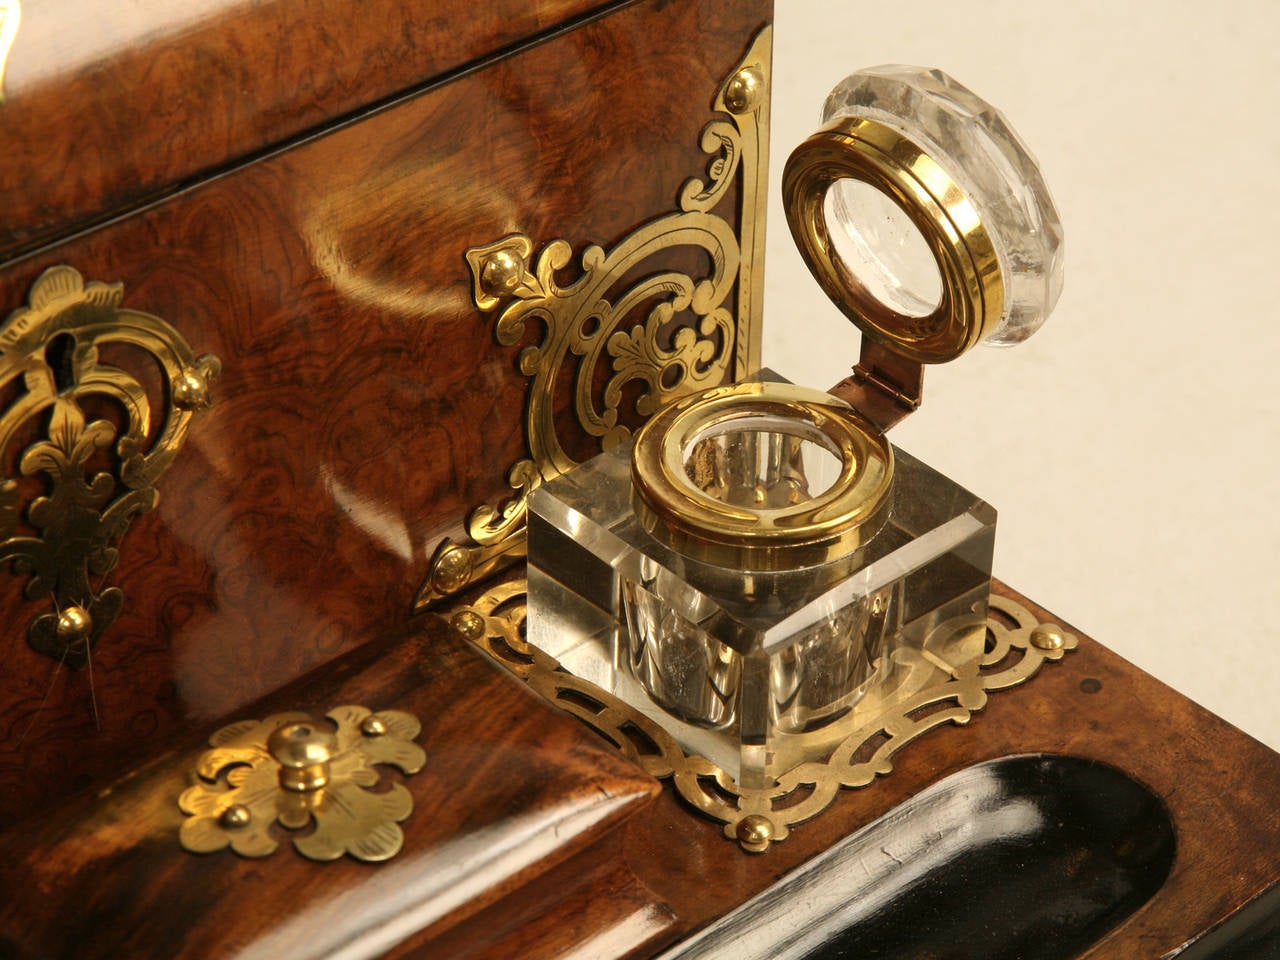 British Exquisite Writing Box, Lap Desk, or Travel Desk